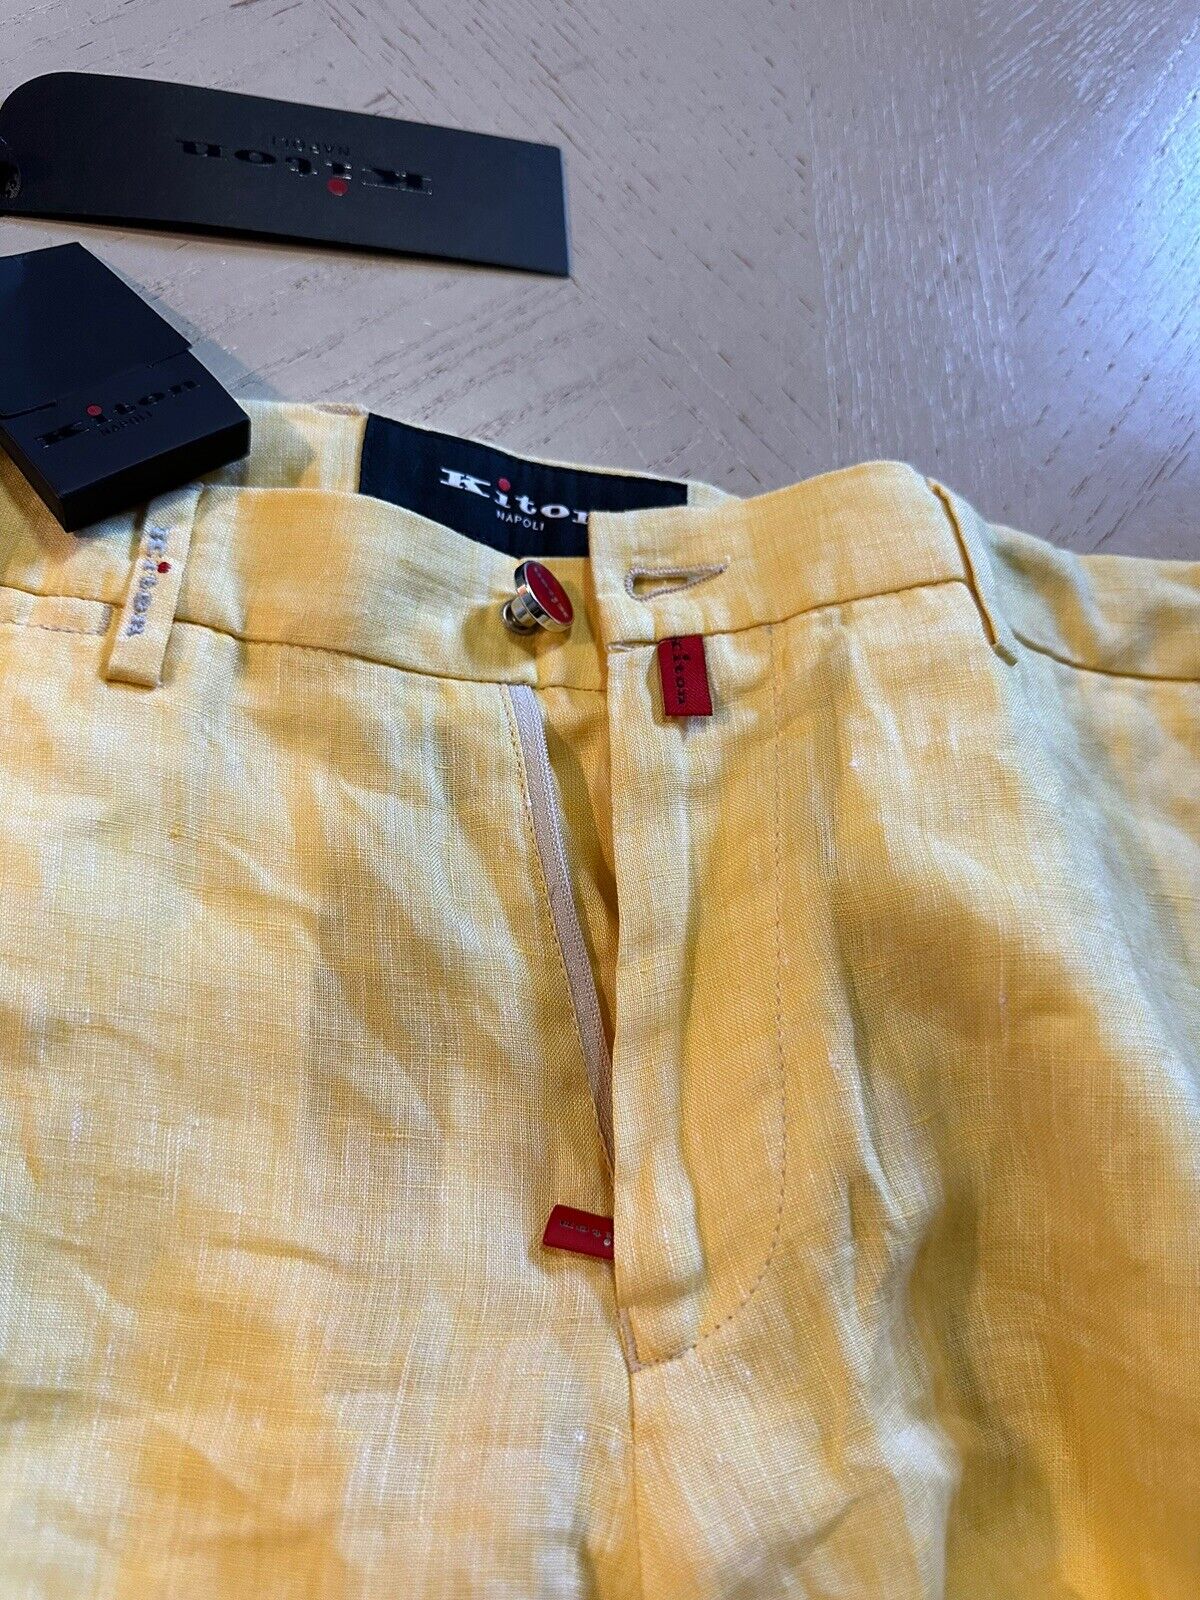 NWT $995 Kiton Mens Linen Short Pants Color Yellow Size 34 US/50 Eu Italy